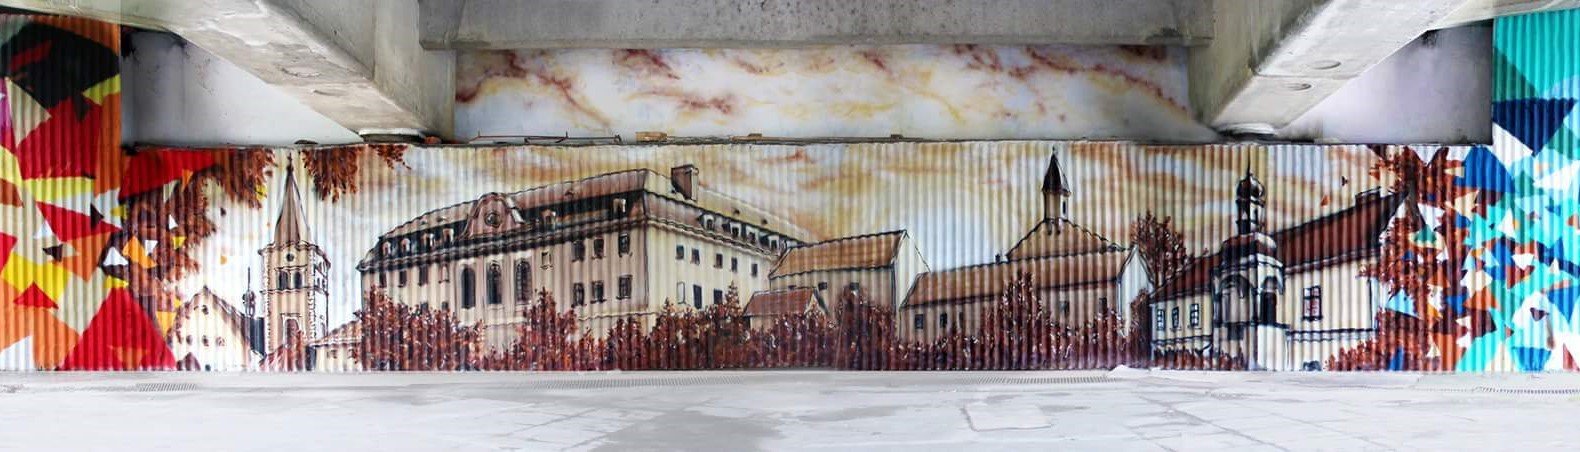 Ve Valašském Meziříčí umělci zkrášlí 240 metrů dlouhou zeď!